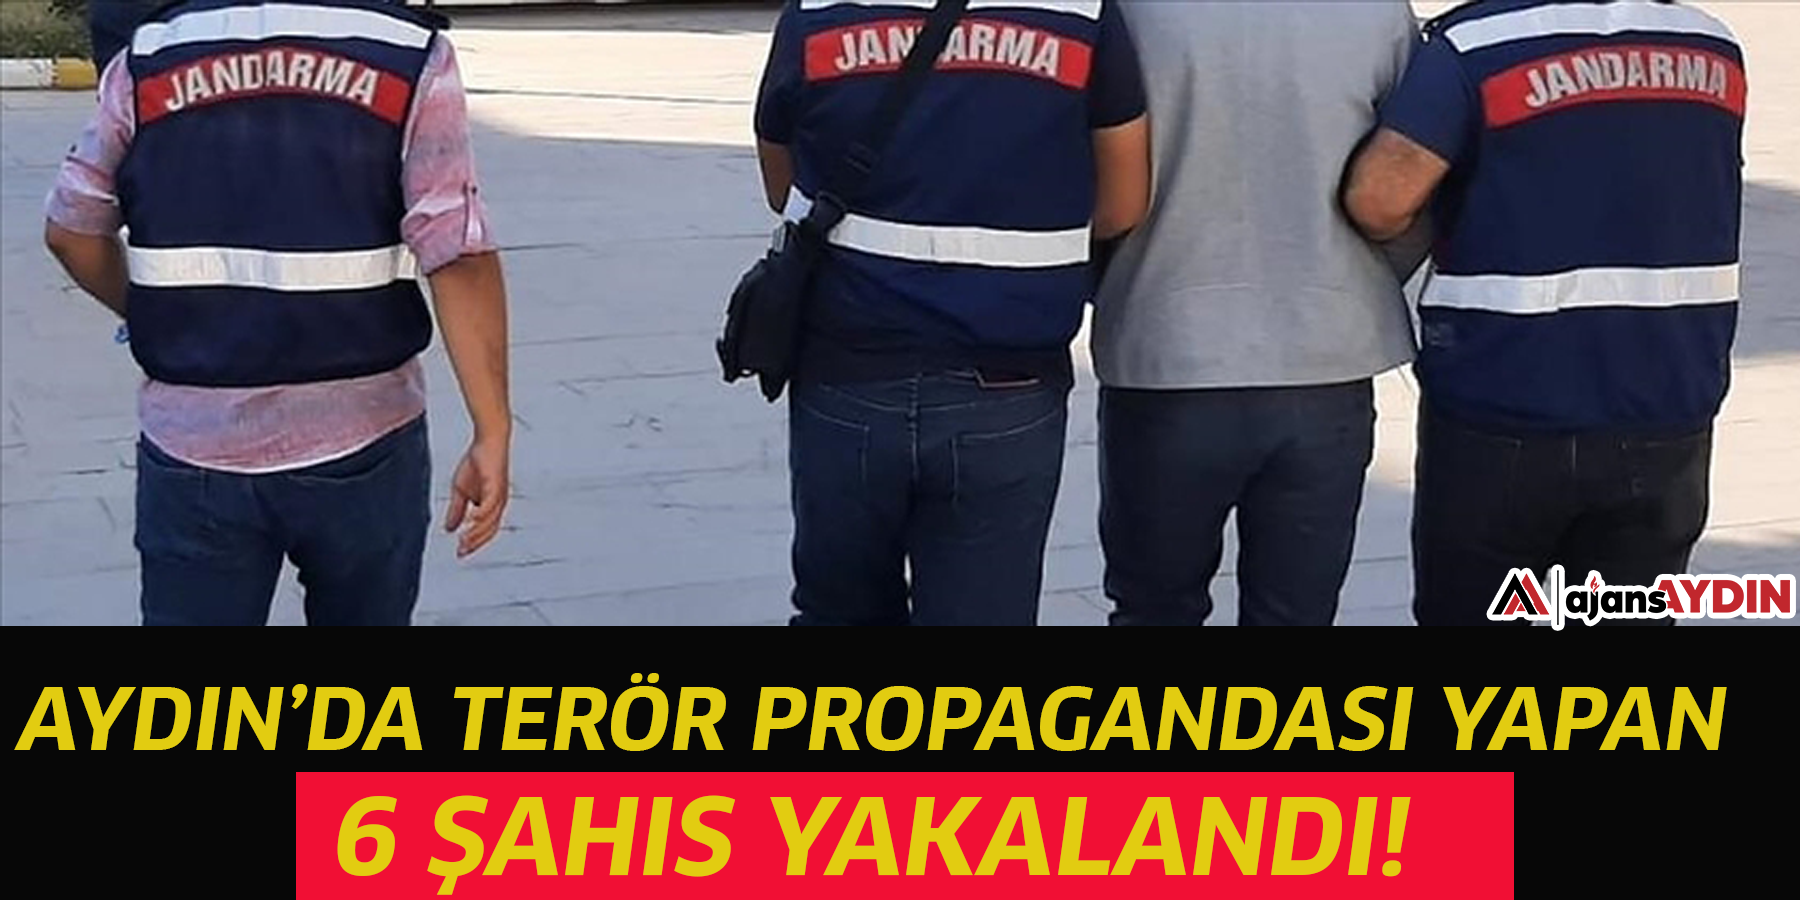 Aydın’da terör propagandası yapan 6 şahsı yakaladı!